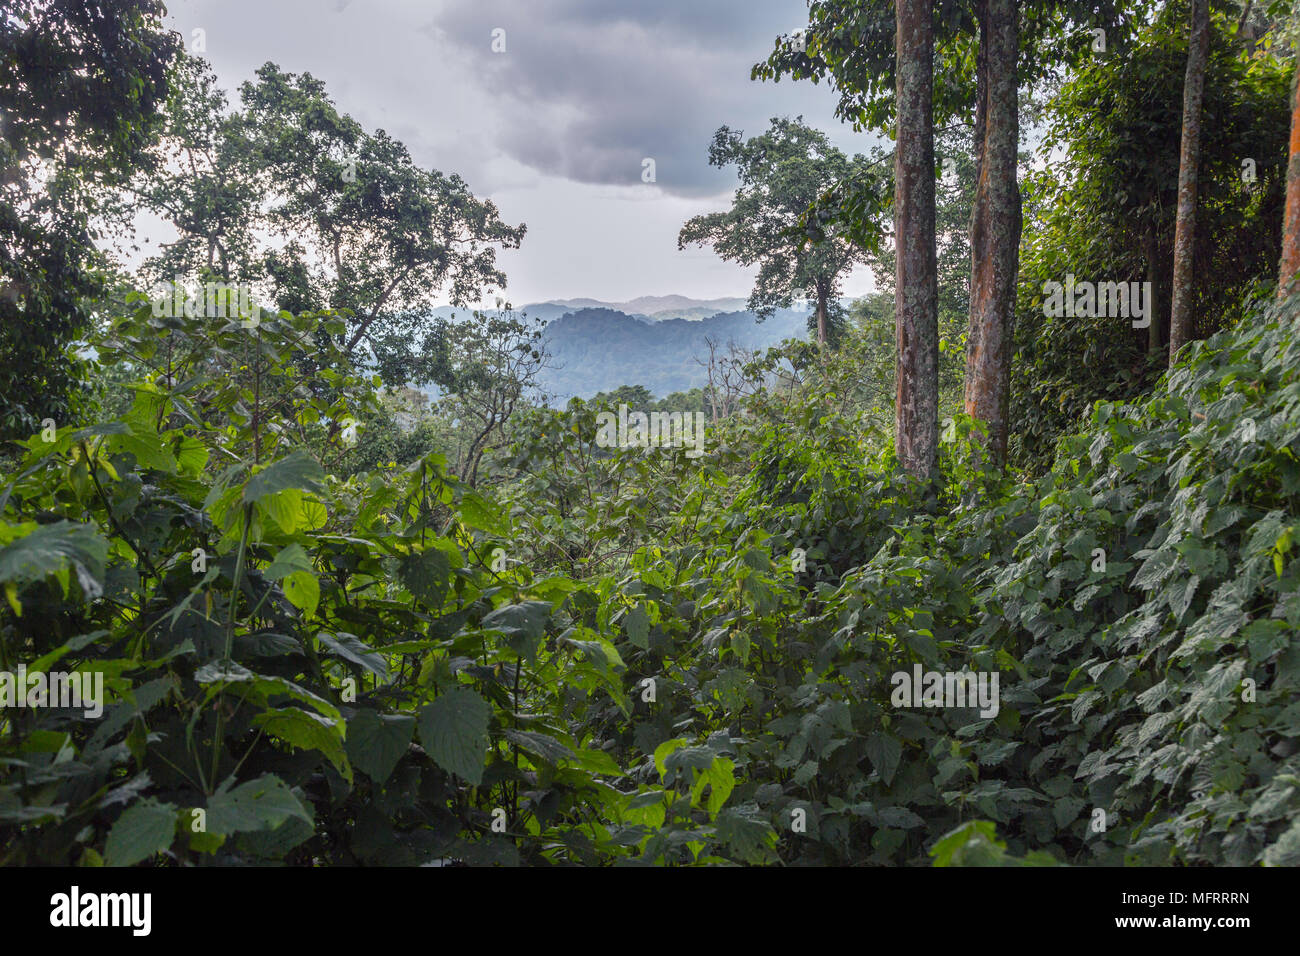 La densa vegetación de la selva tropical, el Parque Nacional Impenetrable de Bwindi, Uganda Foto de stock